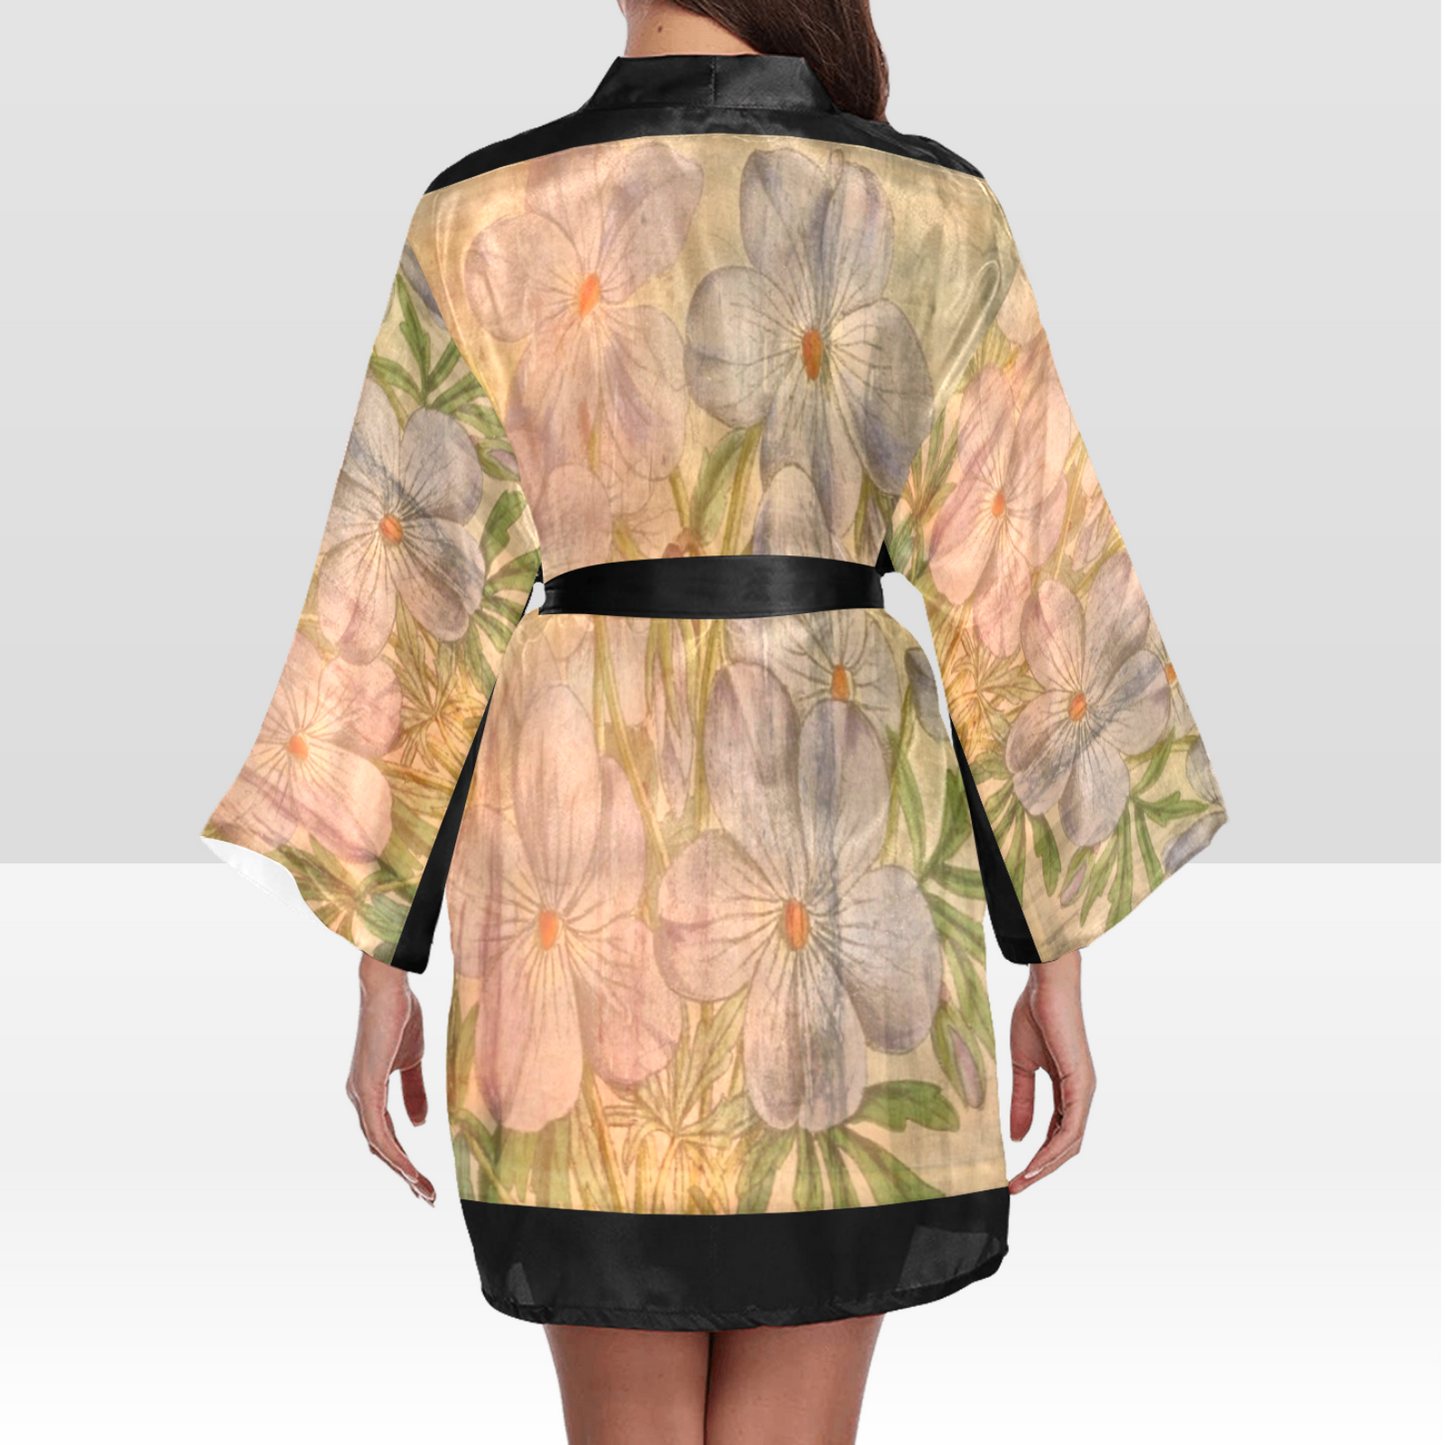 Vintage Floral Kimono Robe, Black or White Trim, Sizes XS to 2XL, Design 13xx